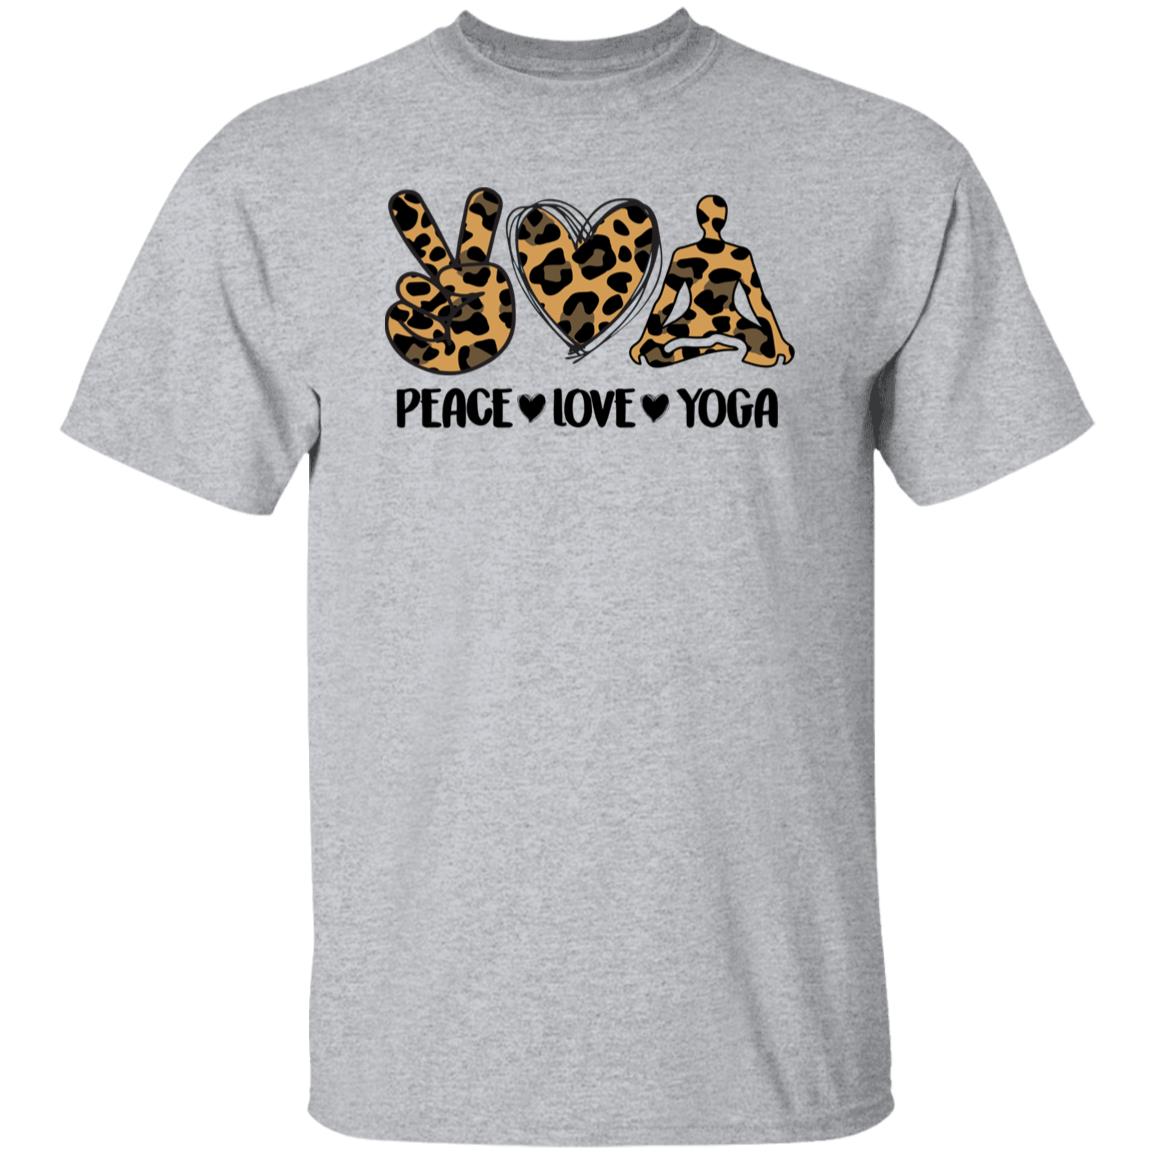 Peace Love Yoga T-Shirt Leopard skin Meditation Yoga Teacher Unisex Tee Sand White Sport Grey-Family-Gift-Planet